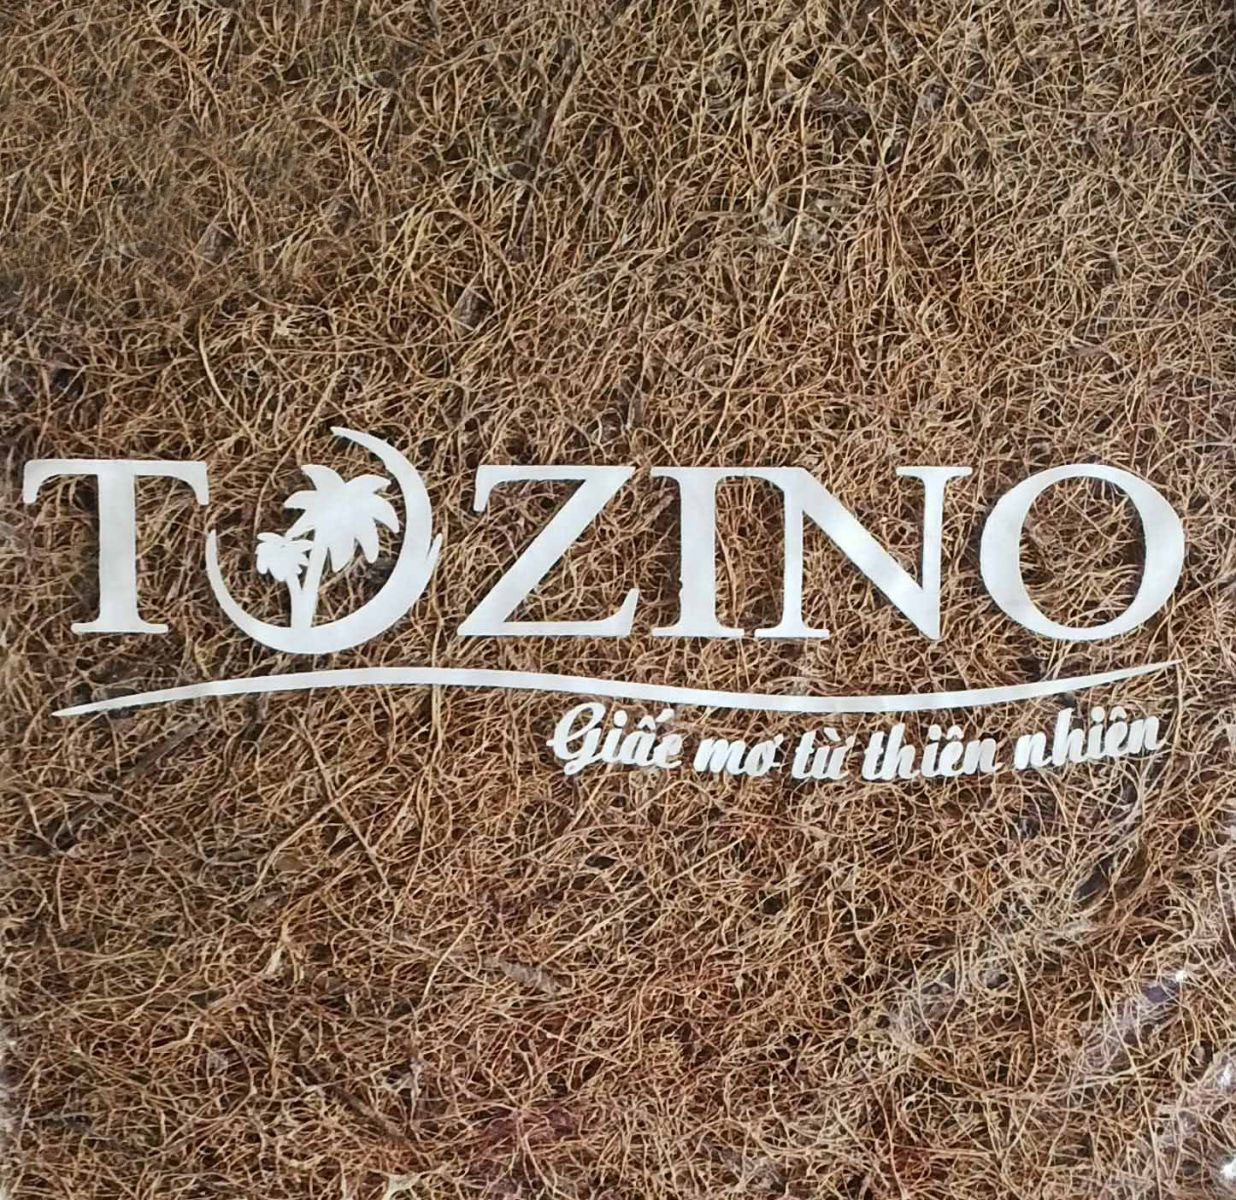 Đệm xơ dừa Tozino được biết đến ngày càng rộng rãi